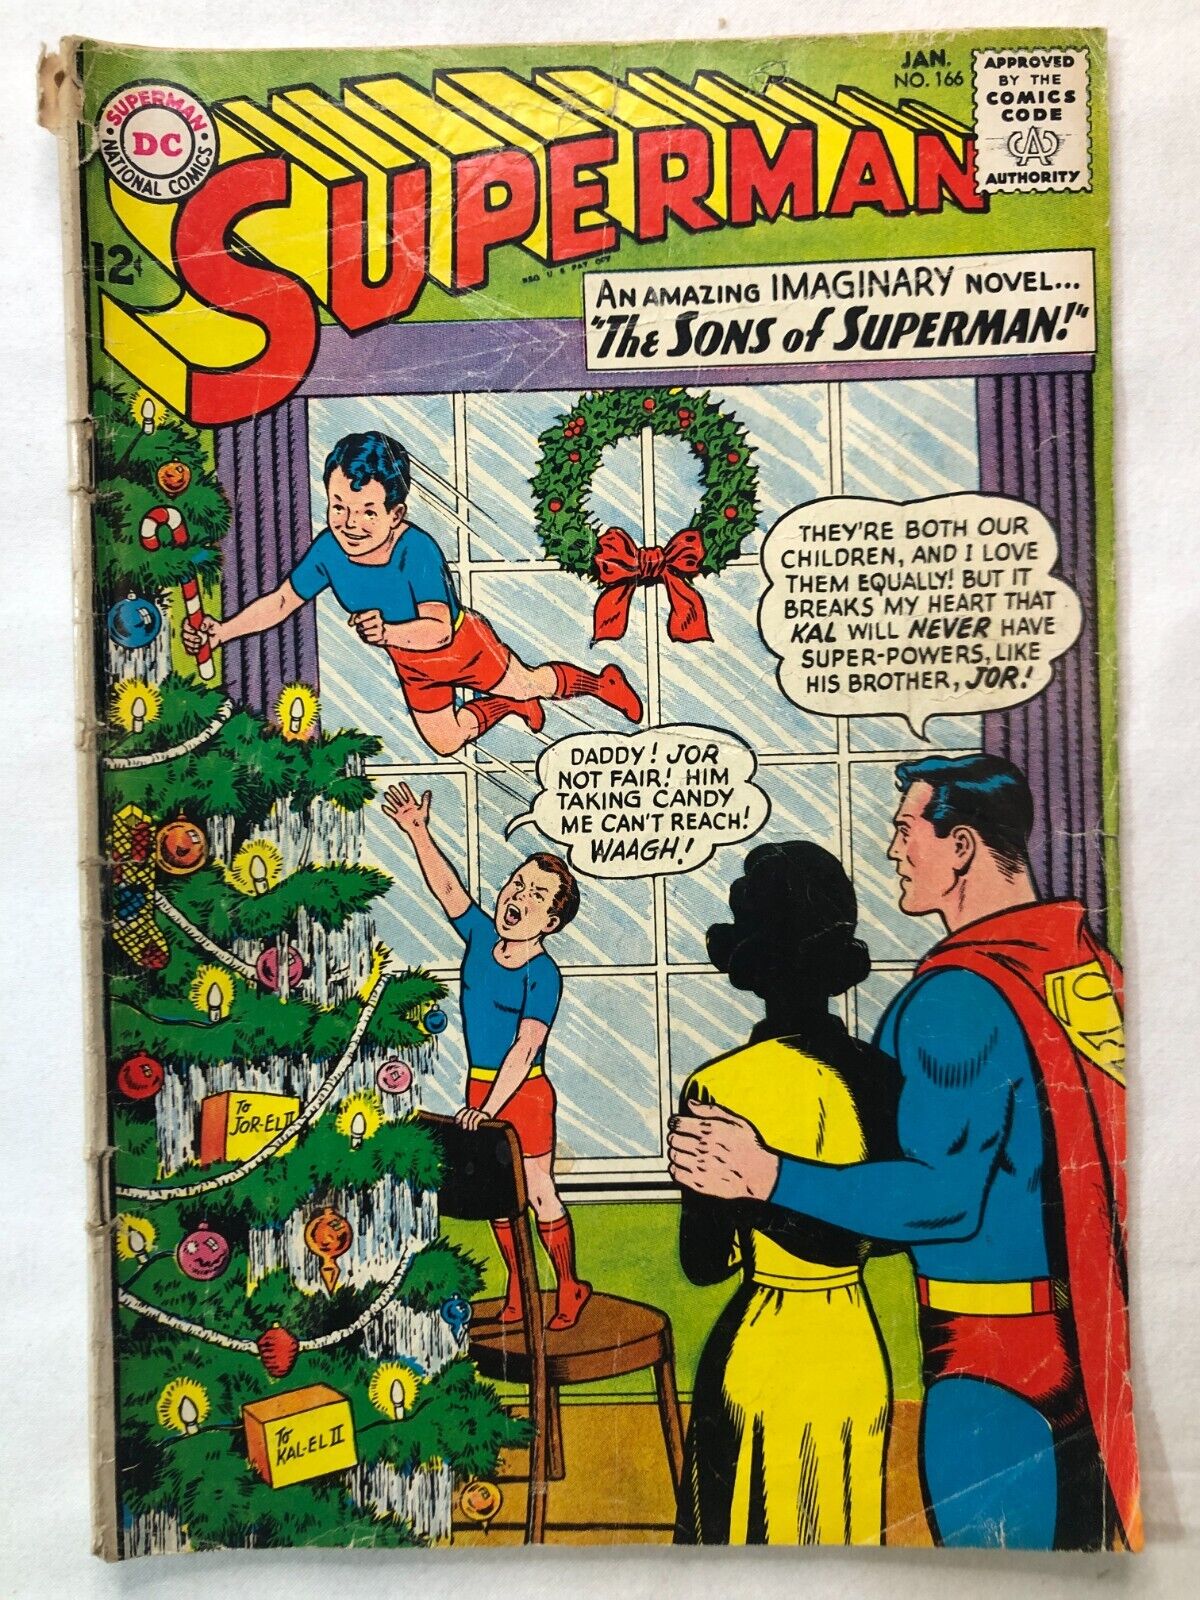 Superman #166 DC Comics Jan 1964 Vintage Silver Age DC Comics Collectable